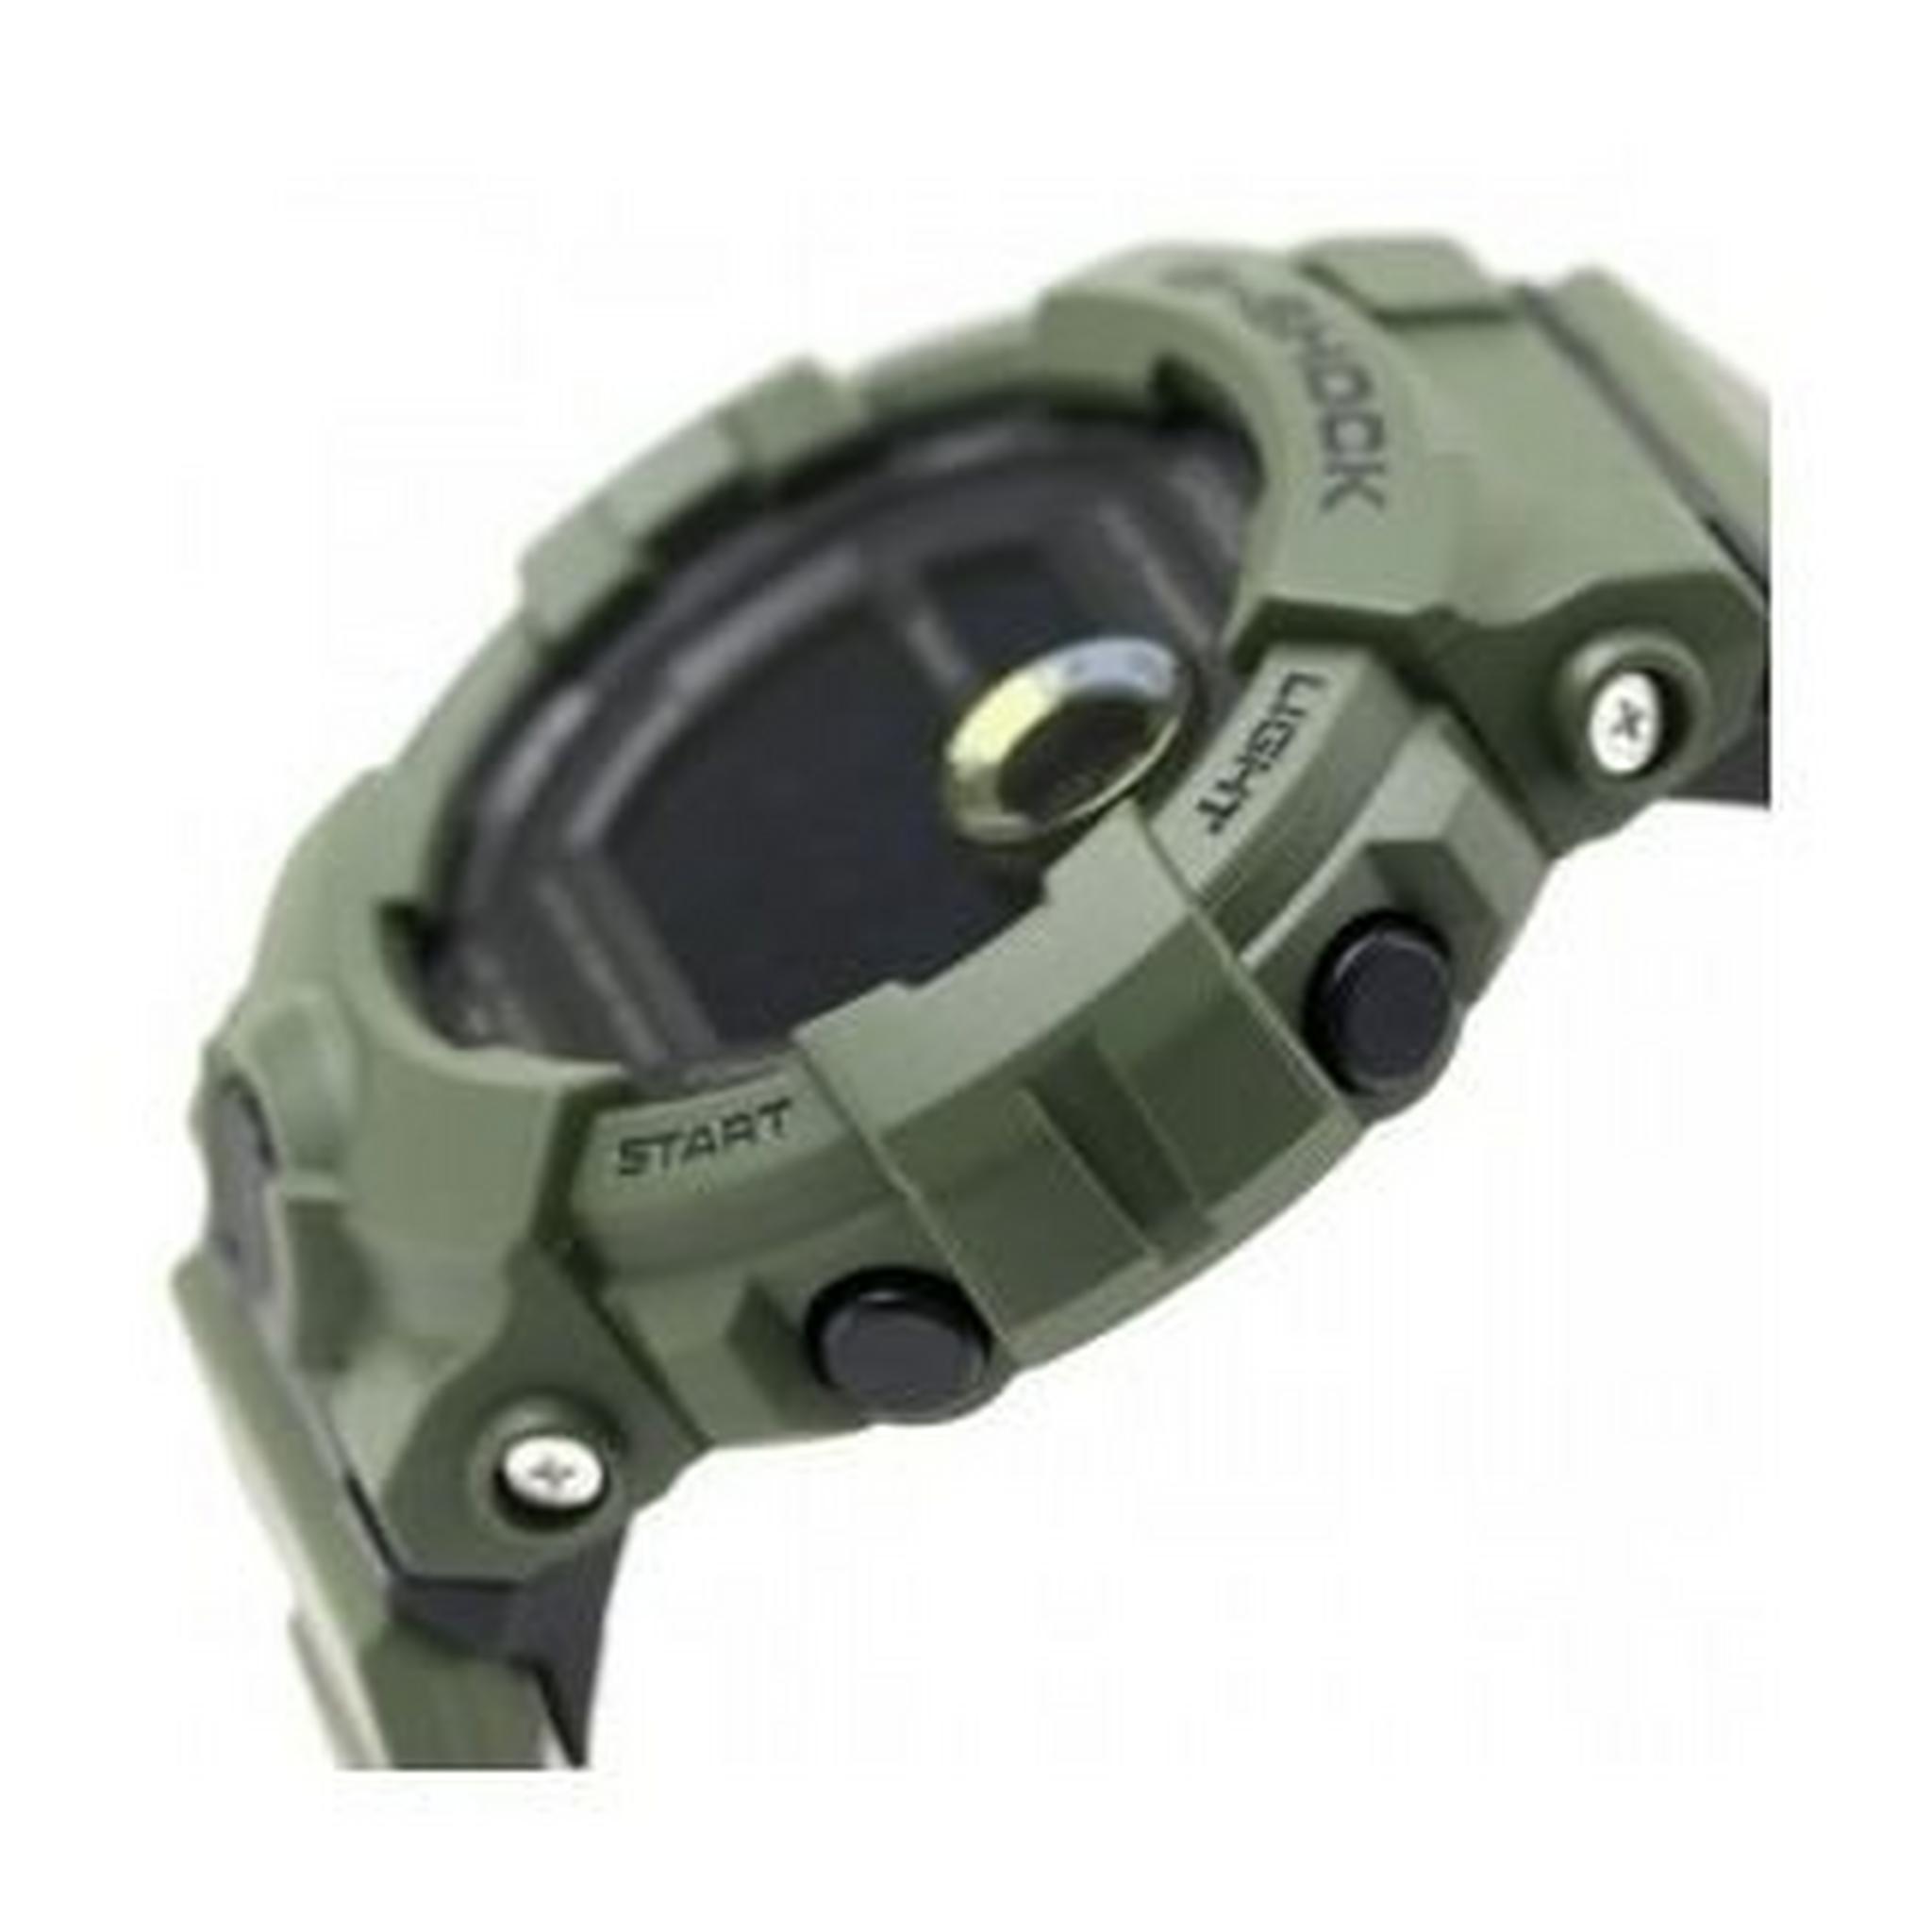 Casio G-shock Analog-Digital Gents Rubber Watch (GBD-800UC-3DR)